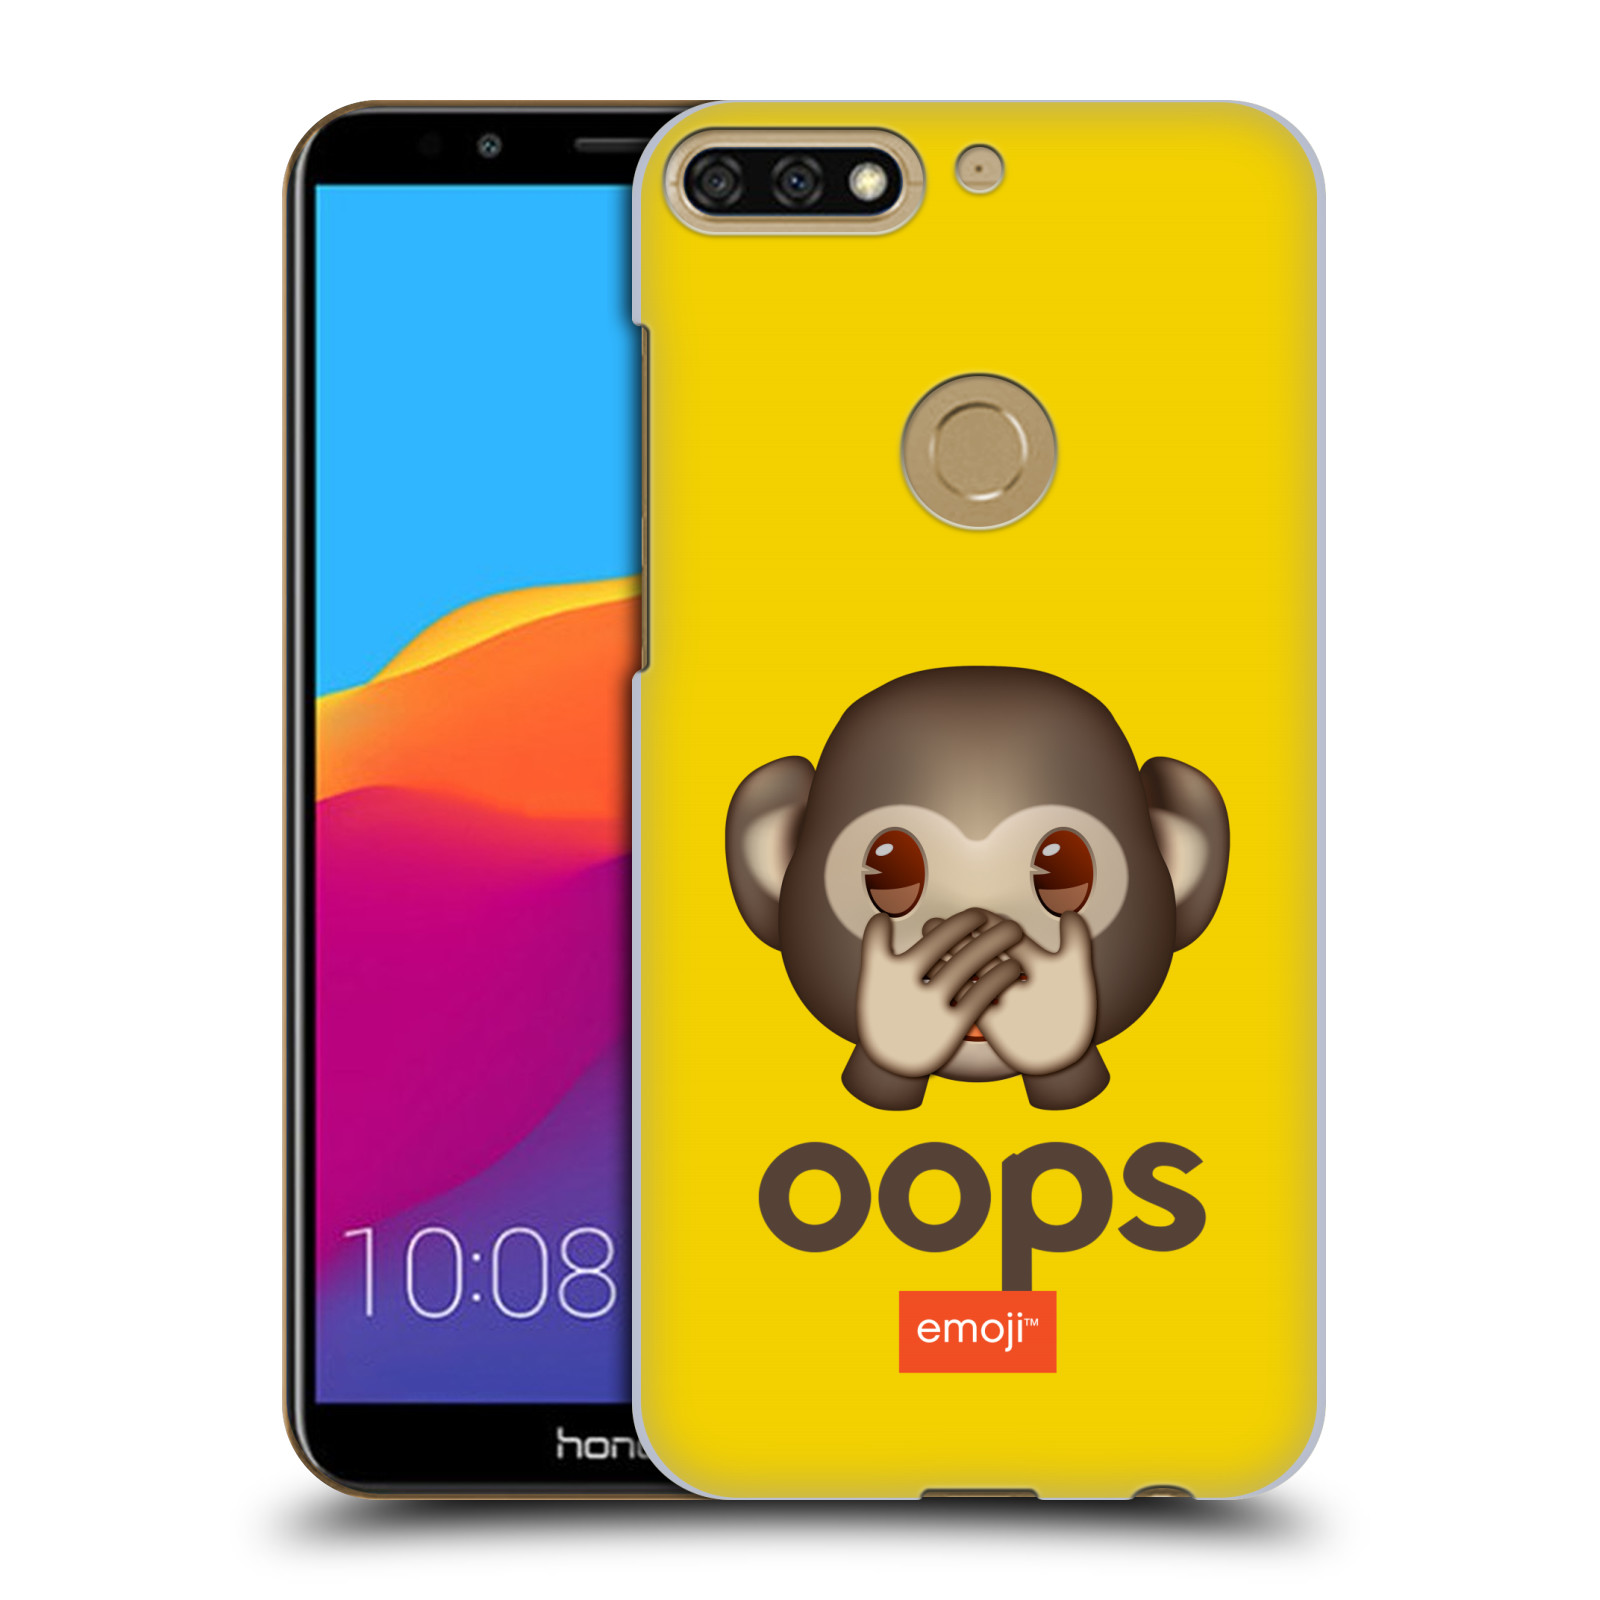 Pouzdro na mobil HONOR 7C - HEAD CASE - Emoji opička Oops